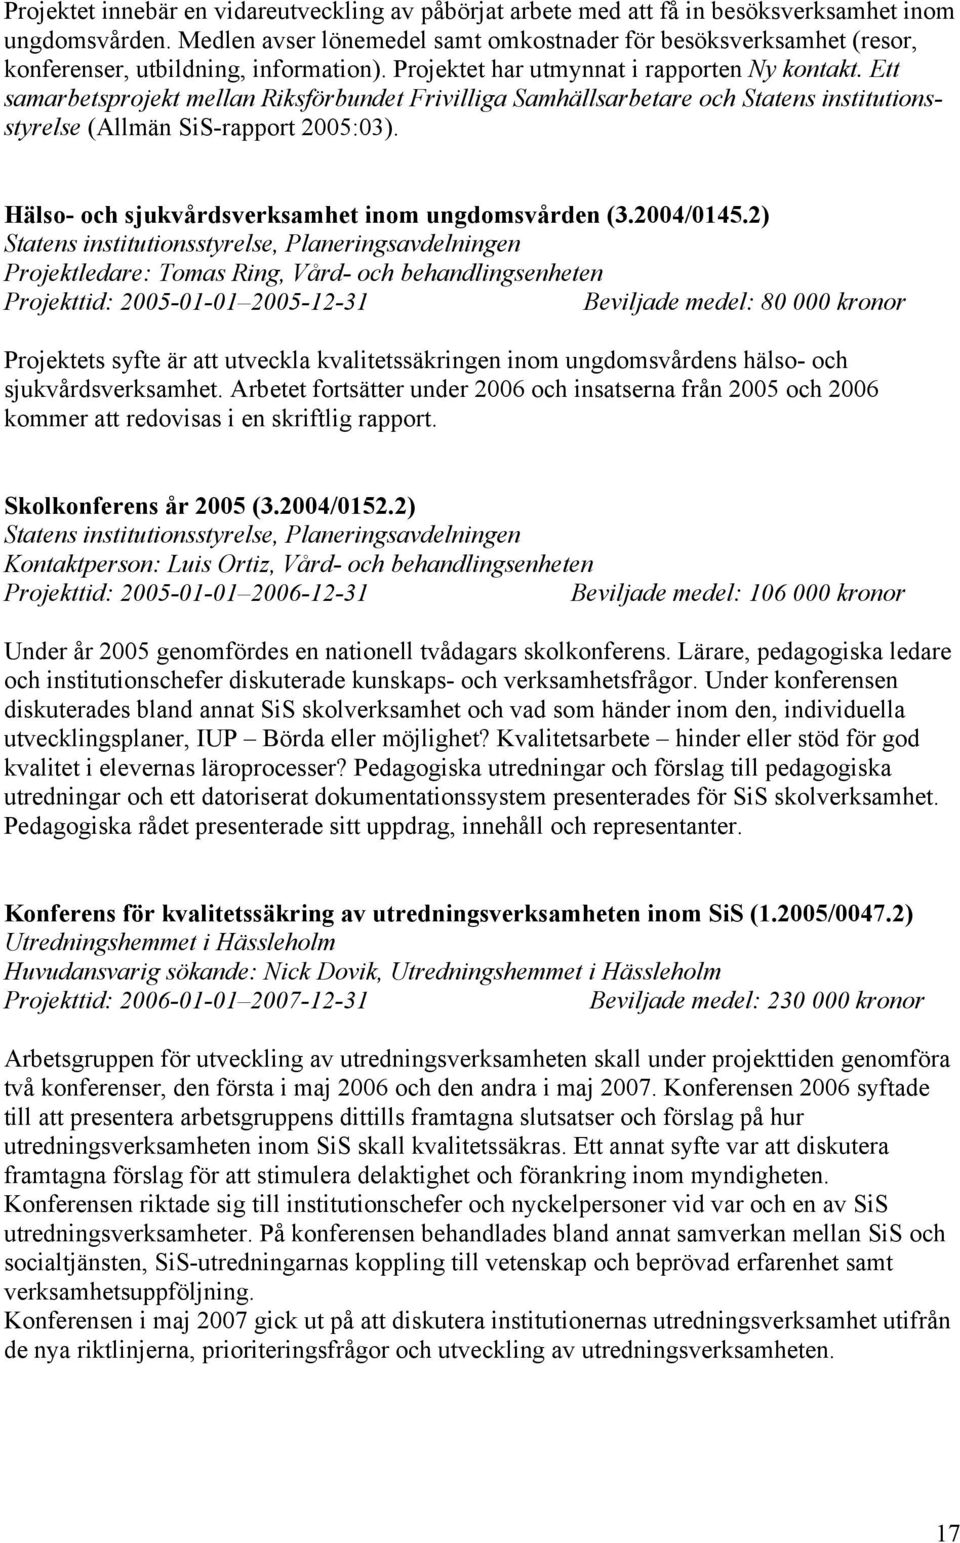 Ett samarbetsprojekt mellan Riksförbundet Frivilliga Samhällsarbetare och Statens institutionsstyrelse (Allmän SiS-rapport 2005:03). Hälso- och sjukvårdsverksamhet inom ungdomsvården (3.2004/0145.